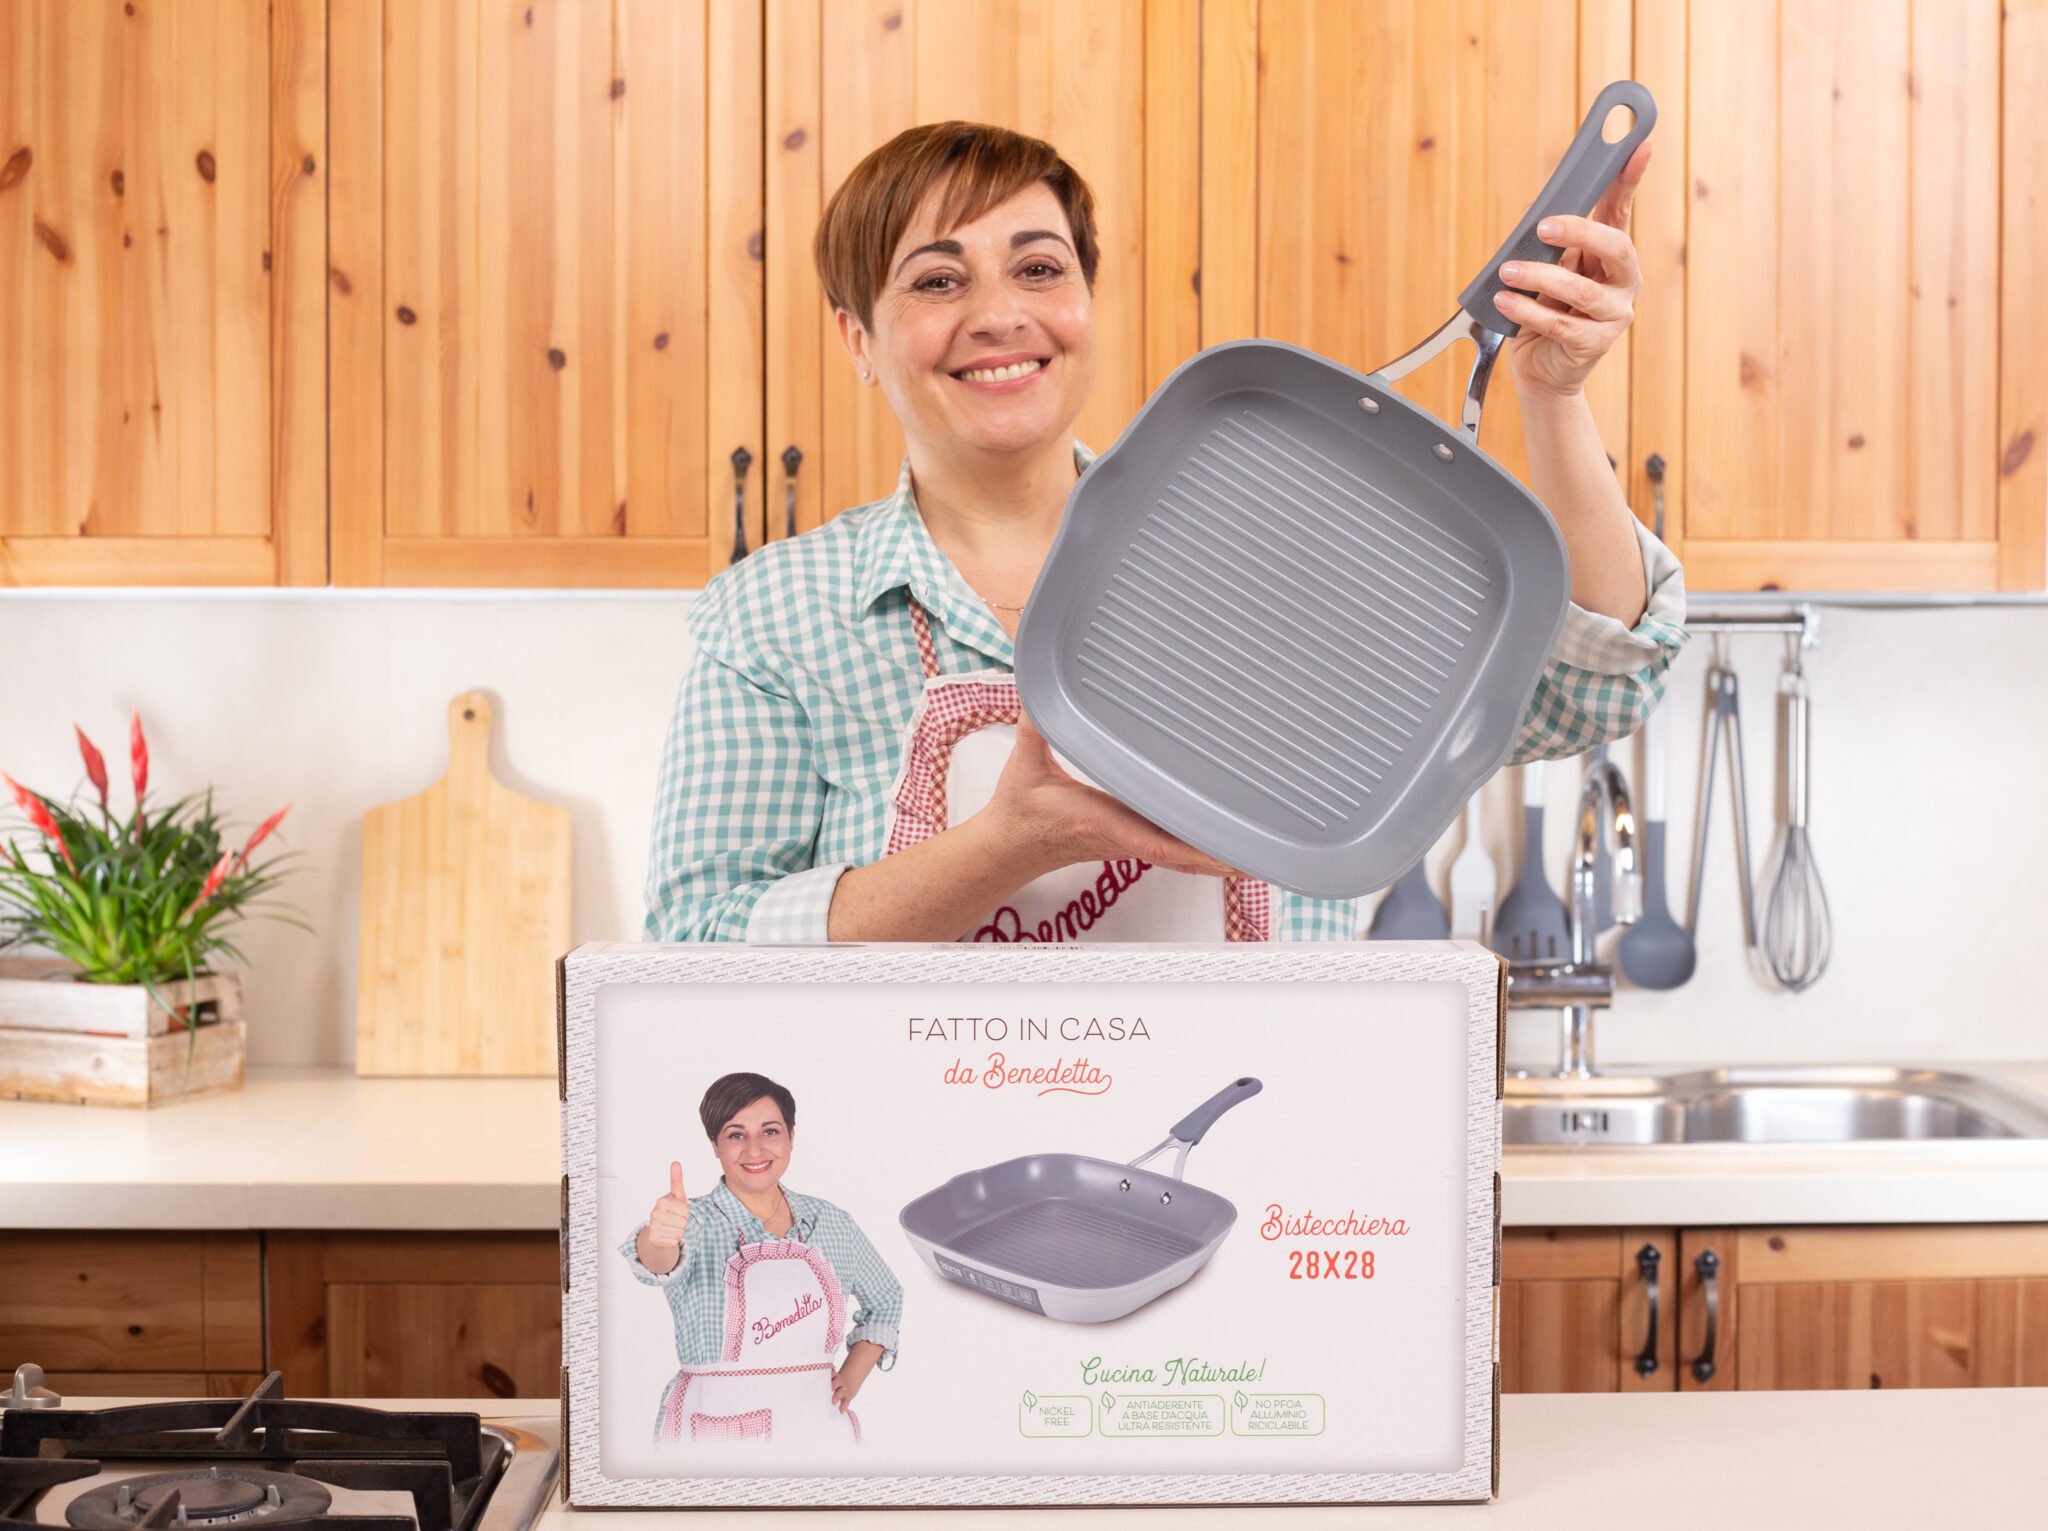 Bistecchiera antiaderente: come sceglierla e usarla - Fatto in casa